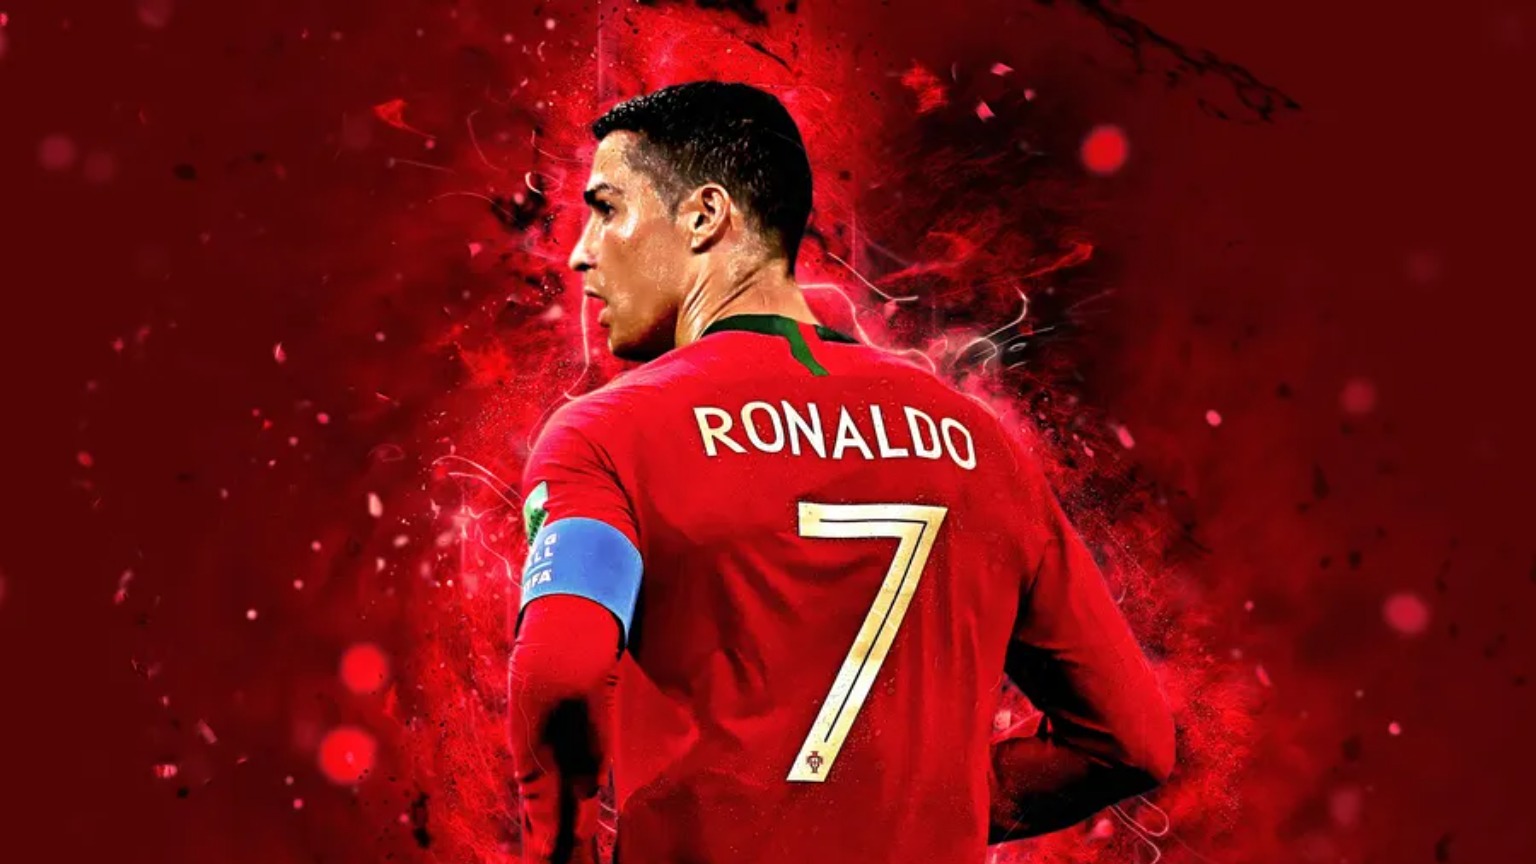 Ronaldo-Beruehmte-Fussballspieler